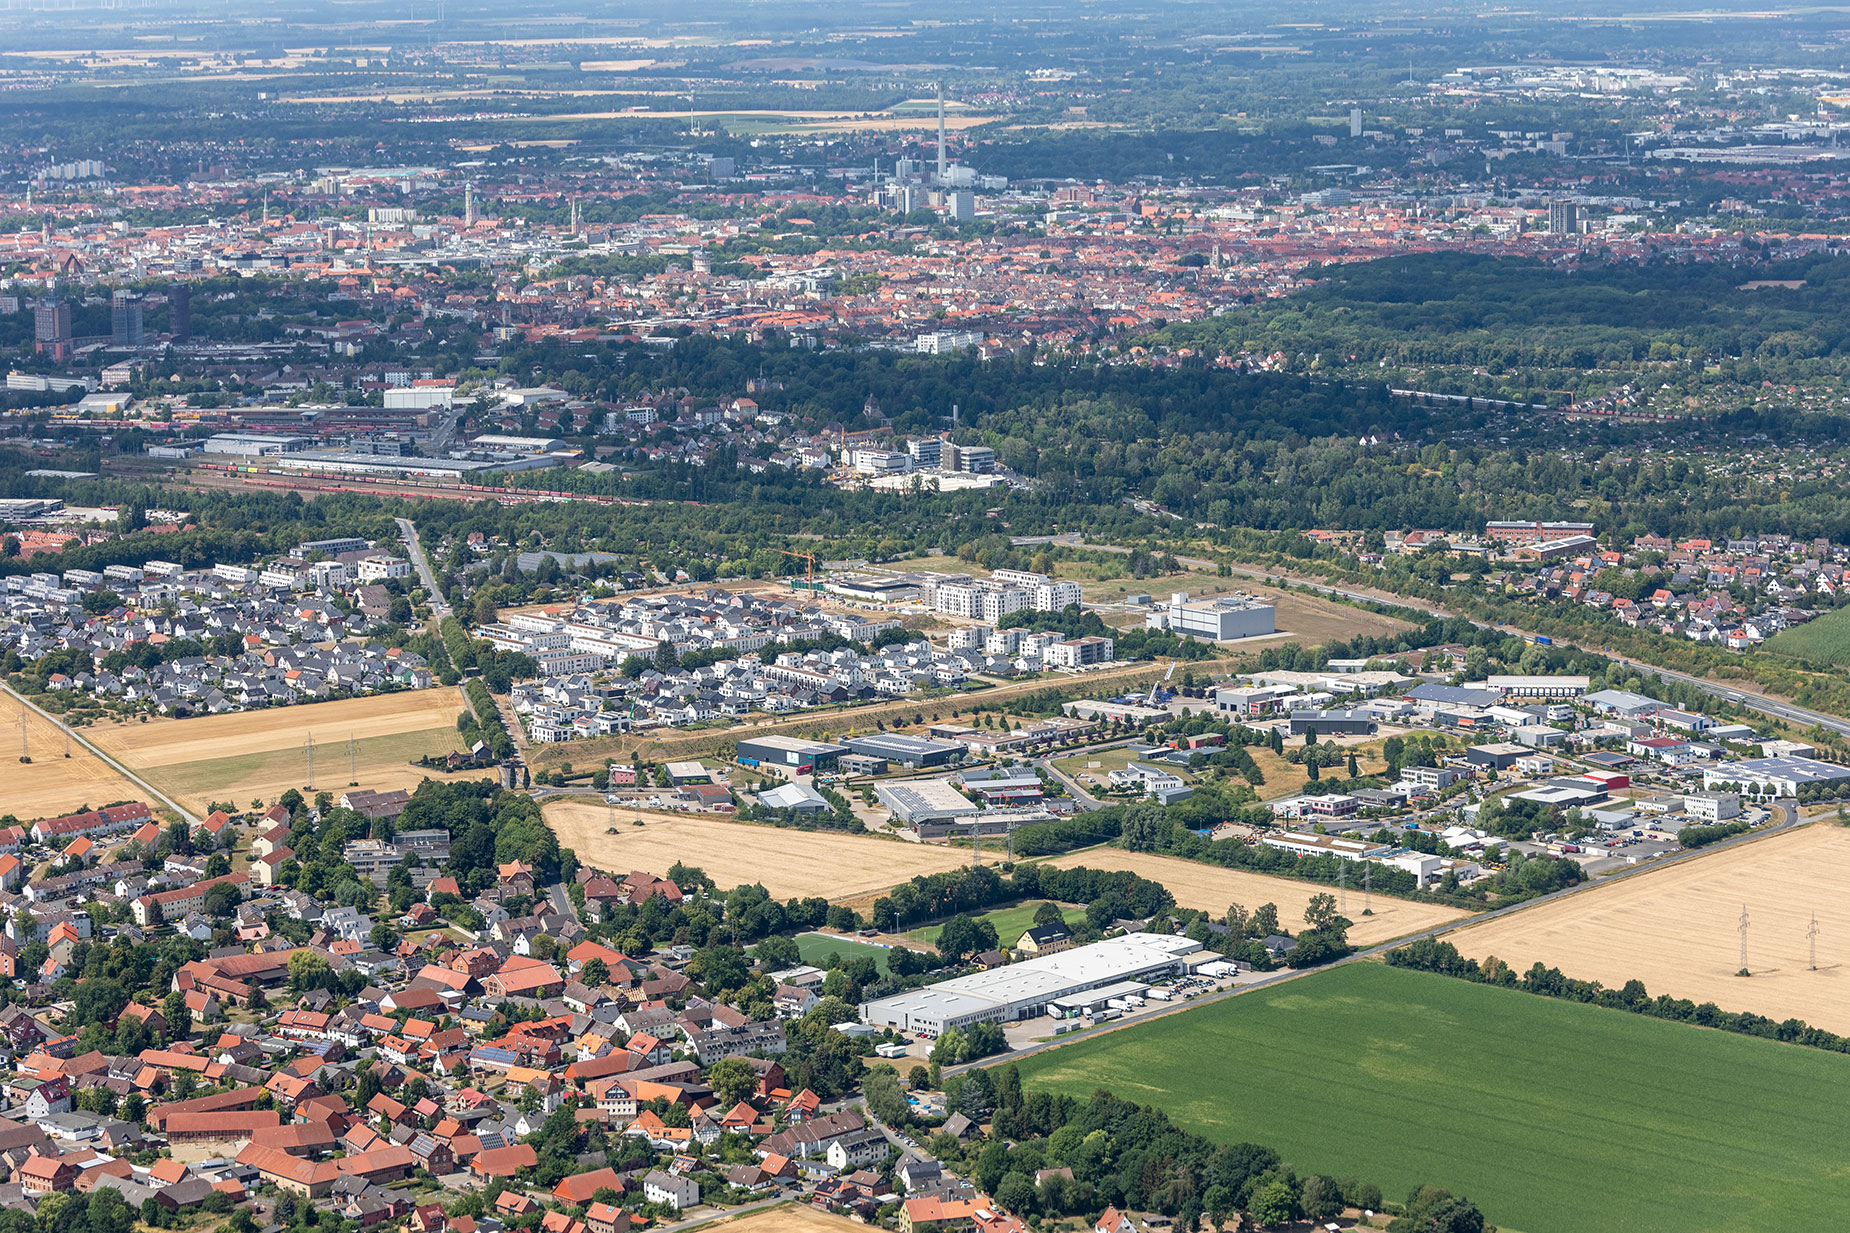 Luftbild Braunschweig-Rautheim